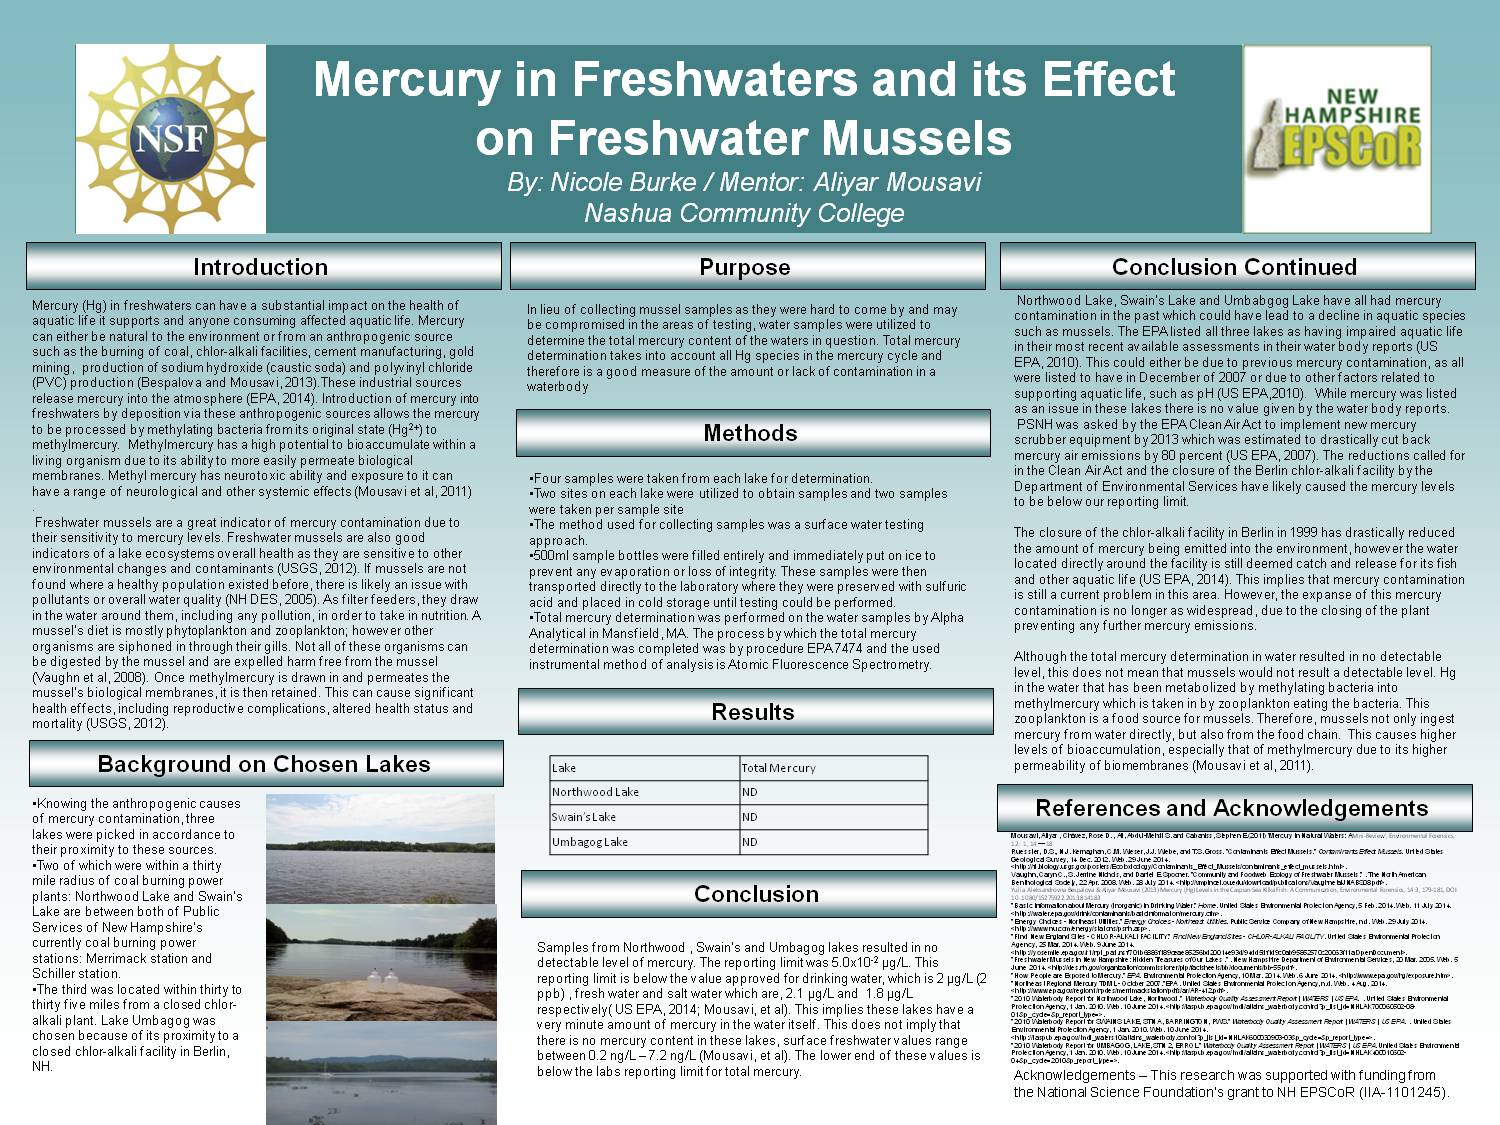 Mercury In Freshwaters by srhale